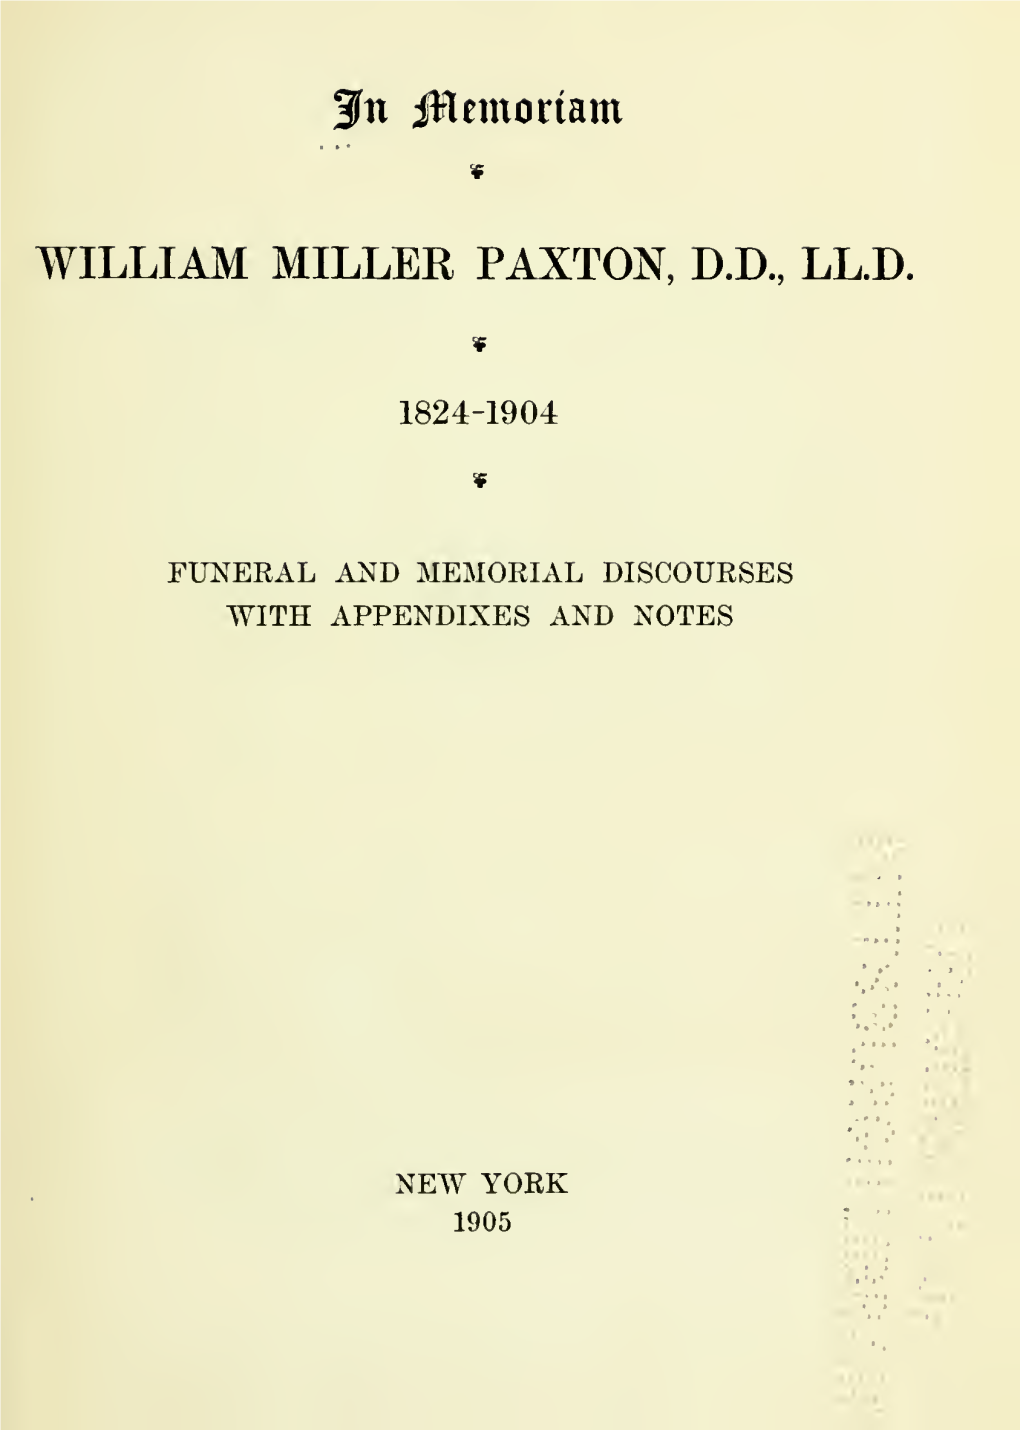 In Memoriam, William Miller Paxton, DD, LL.D., 1824-1904